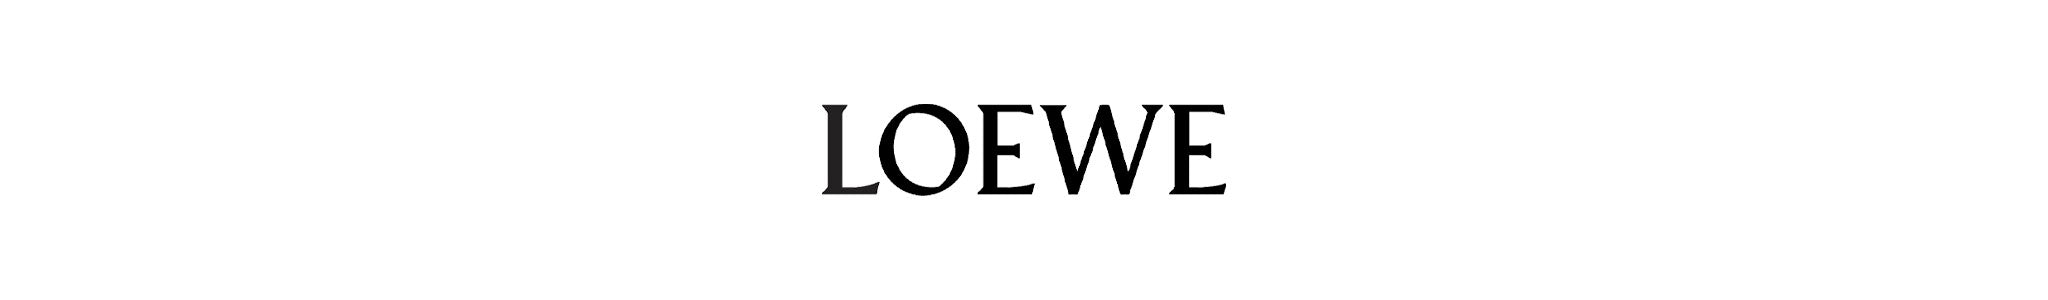 Loewe Glasses: Contemporary Eyewear Collection | Designer Eyes